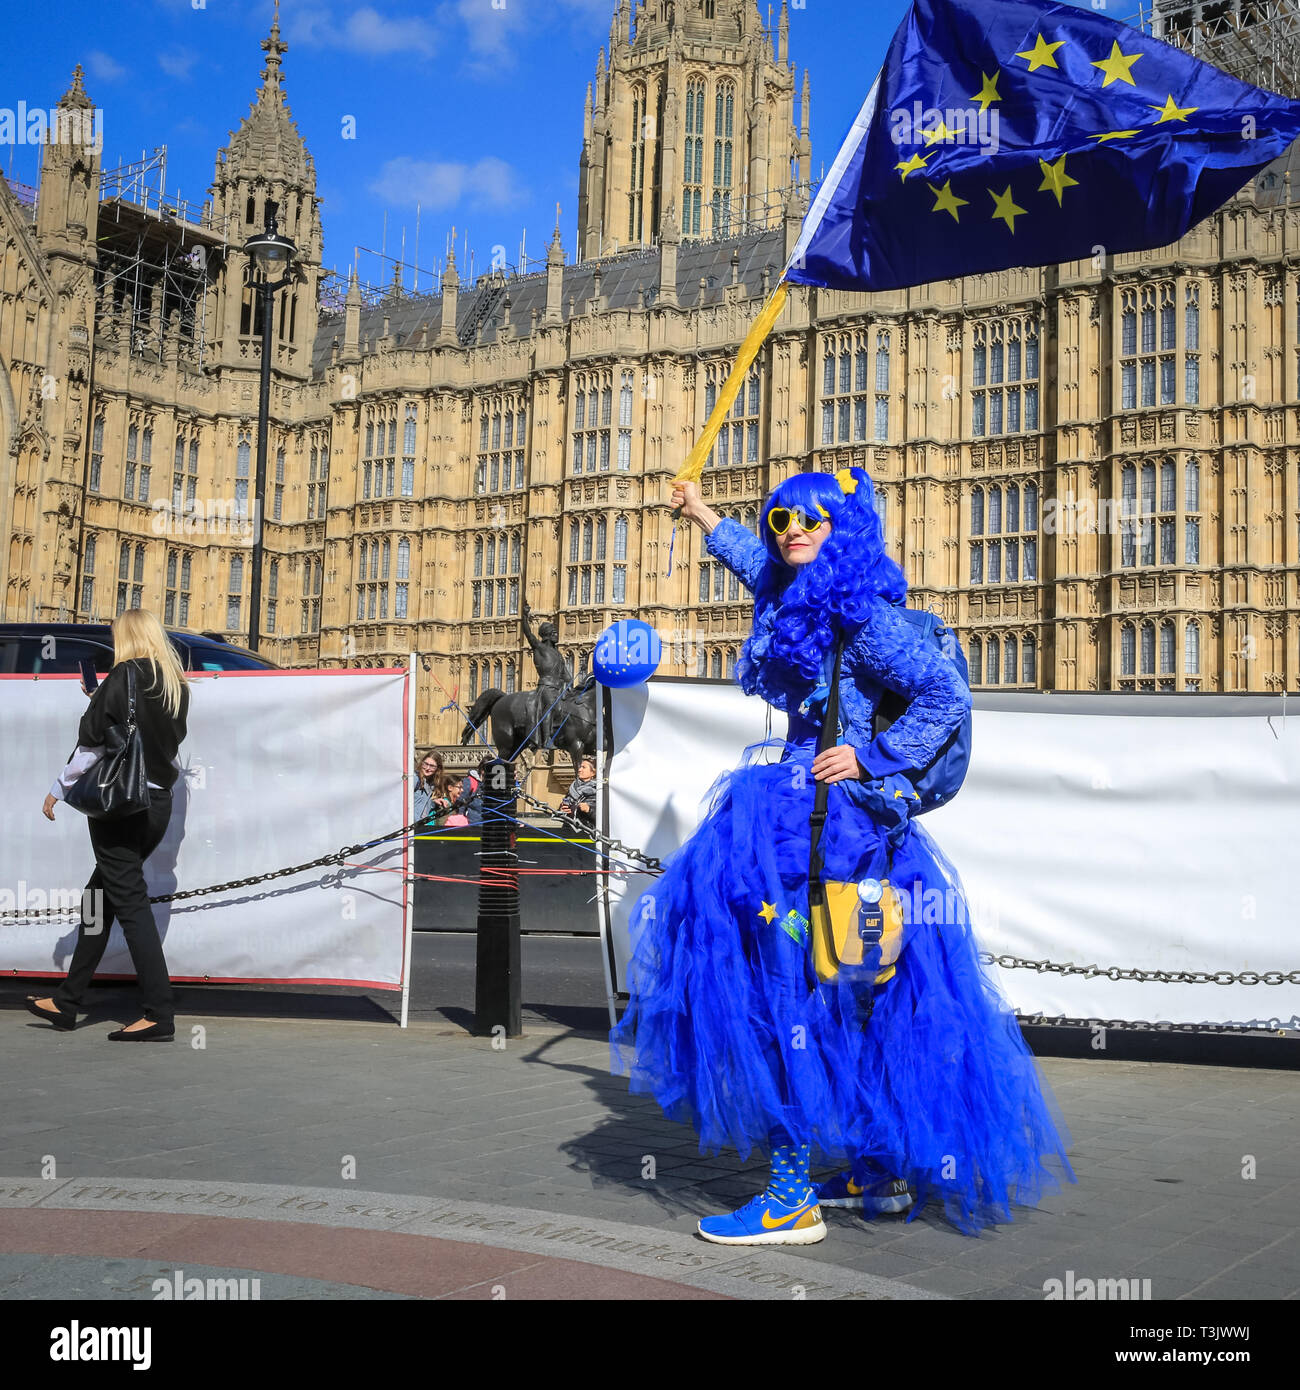 Westminster, Londra, UK, 10 aprile 2019. Una giovane donna indossa un luminoso blu e giallo vestito dell'UE. Pro e contro manifestanti Brexit rally al di fuori le case o il parlamento di Westminster, come Theresa Maggio è ancora una volta a Bruxelles a negoziare su una estensione Brexit. Alcuni proteters entrare in un dibattito. Credito: Imageplotter/Alamy Live News Foto Stock